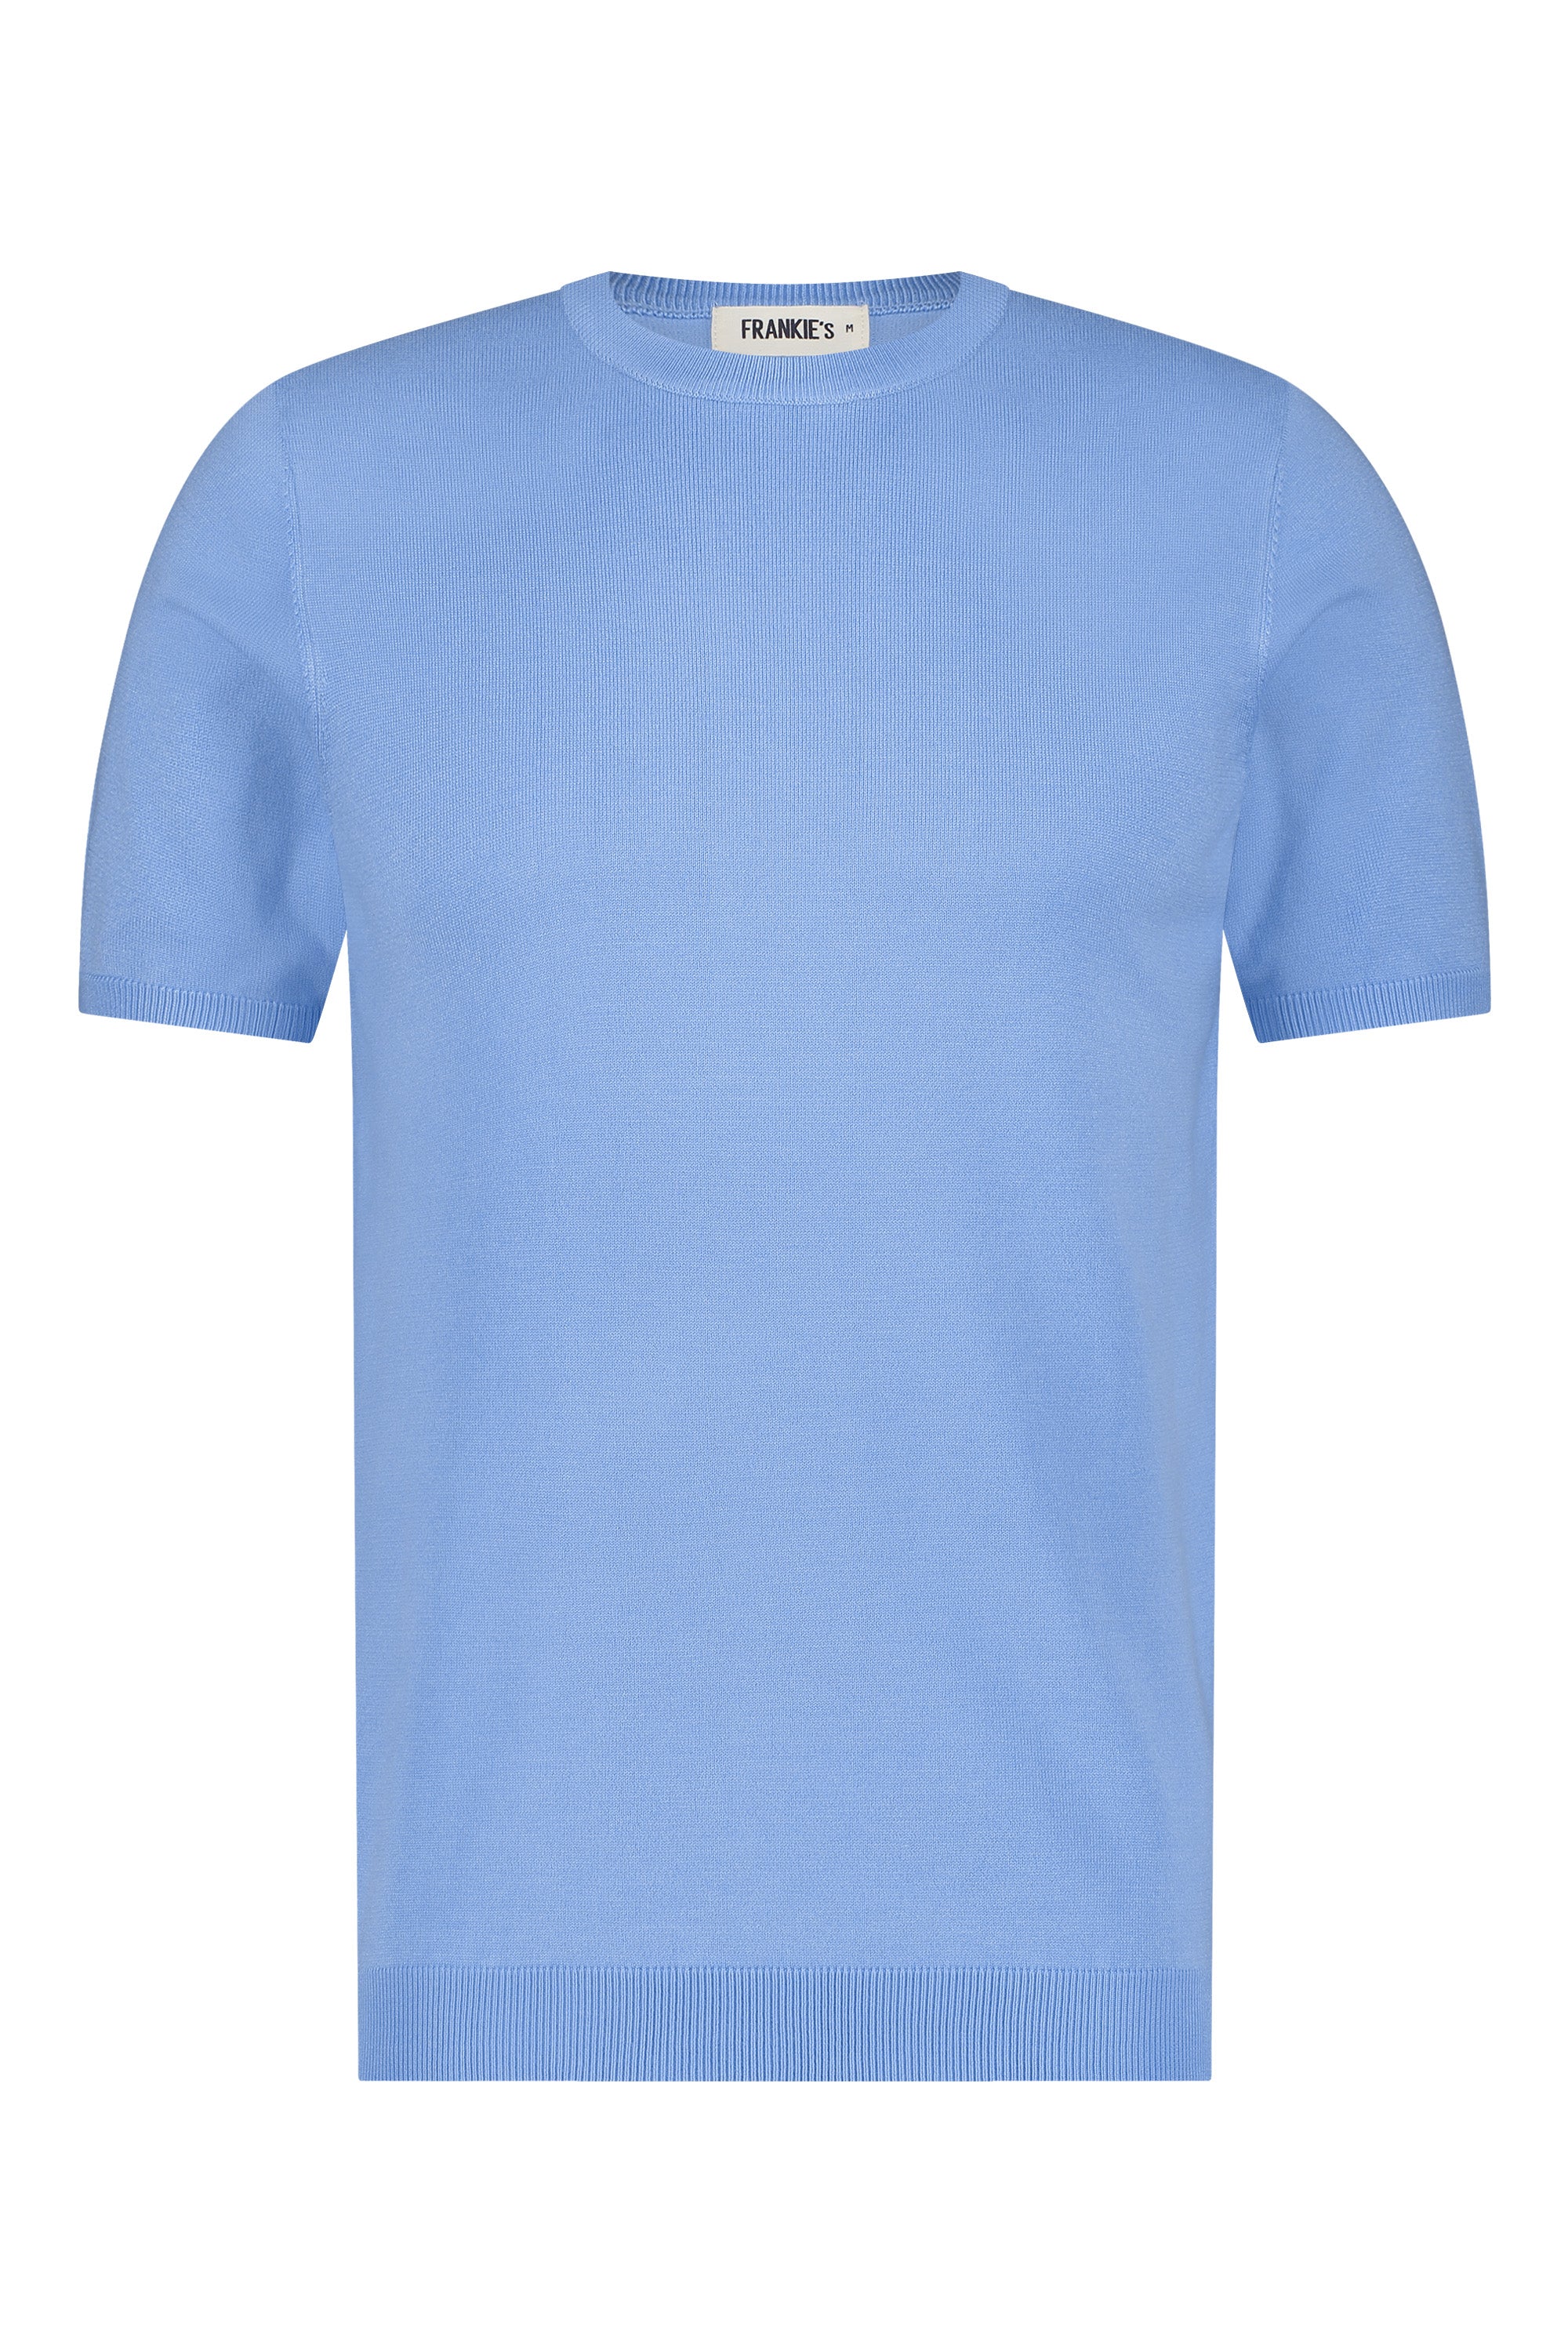 T-shirt knitwear short sleeve light blue